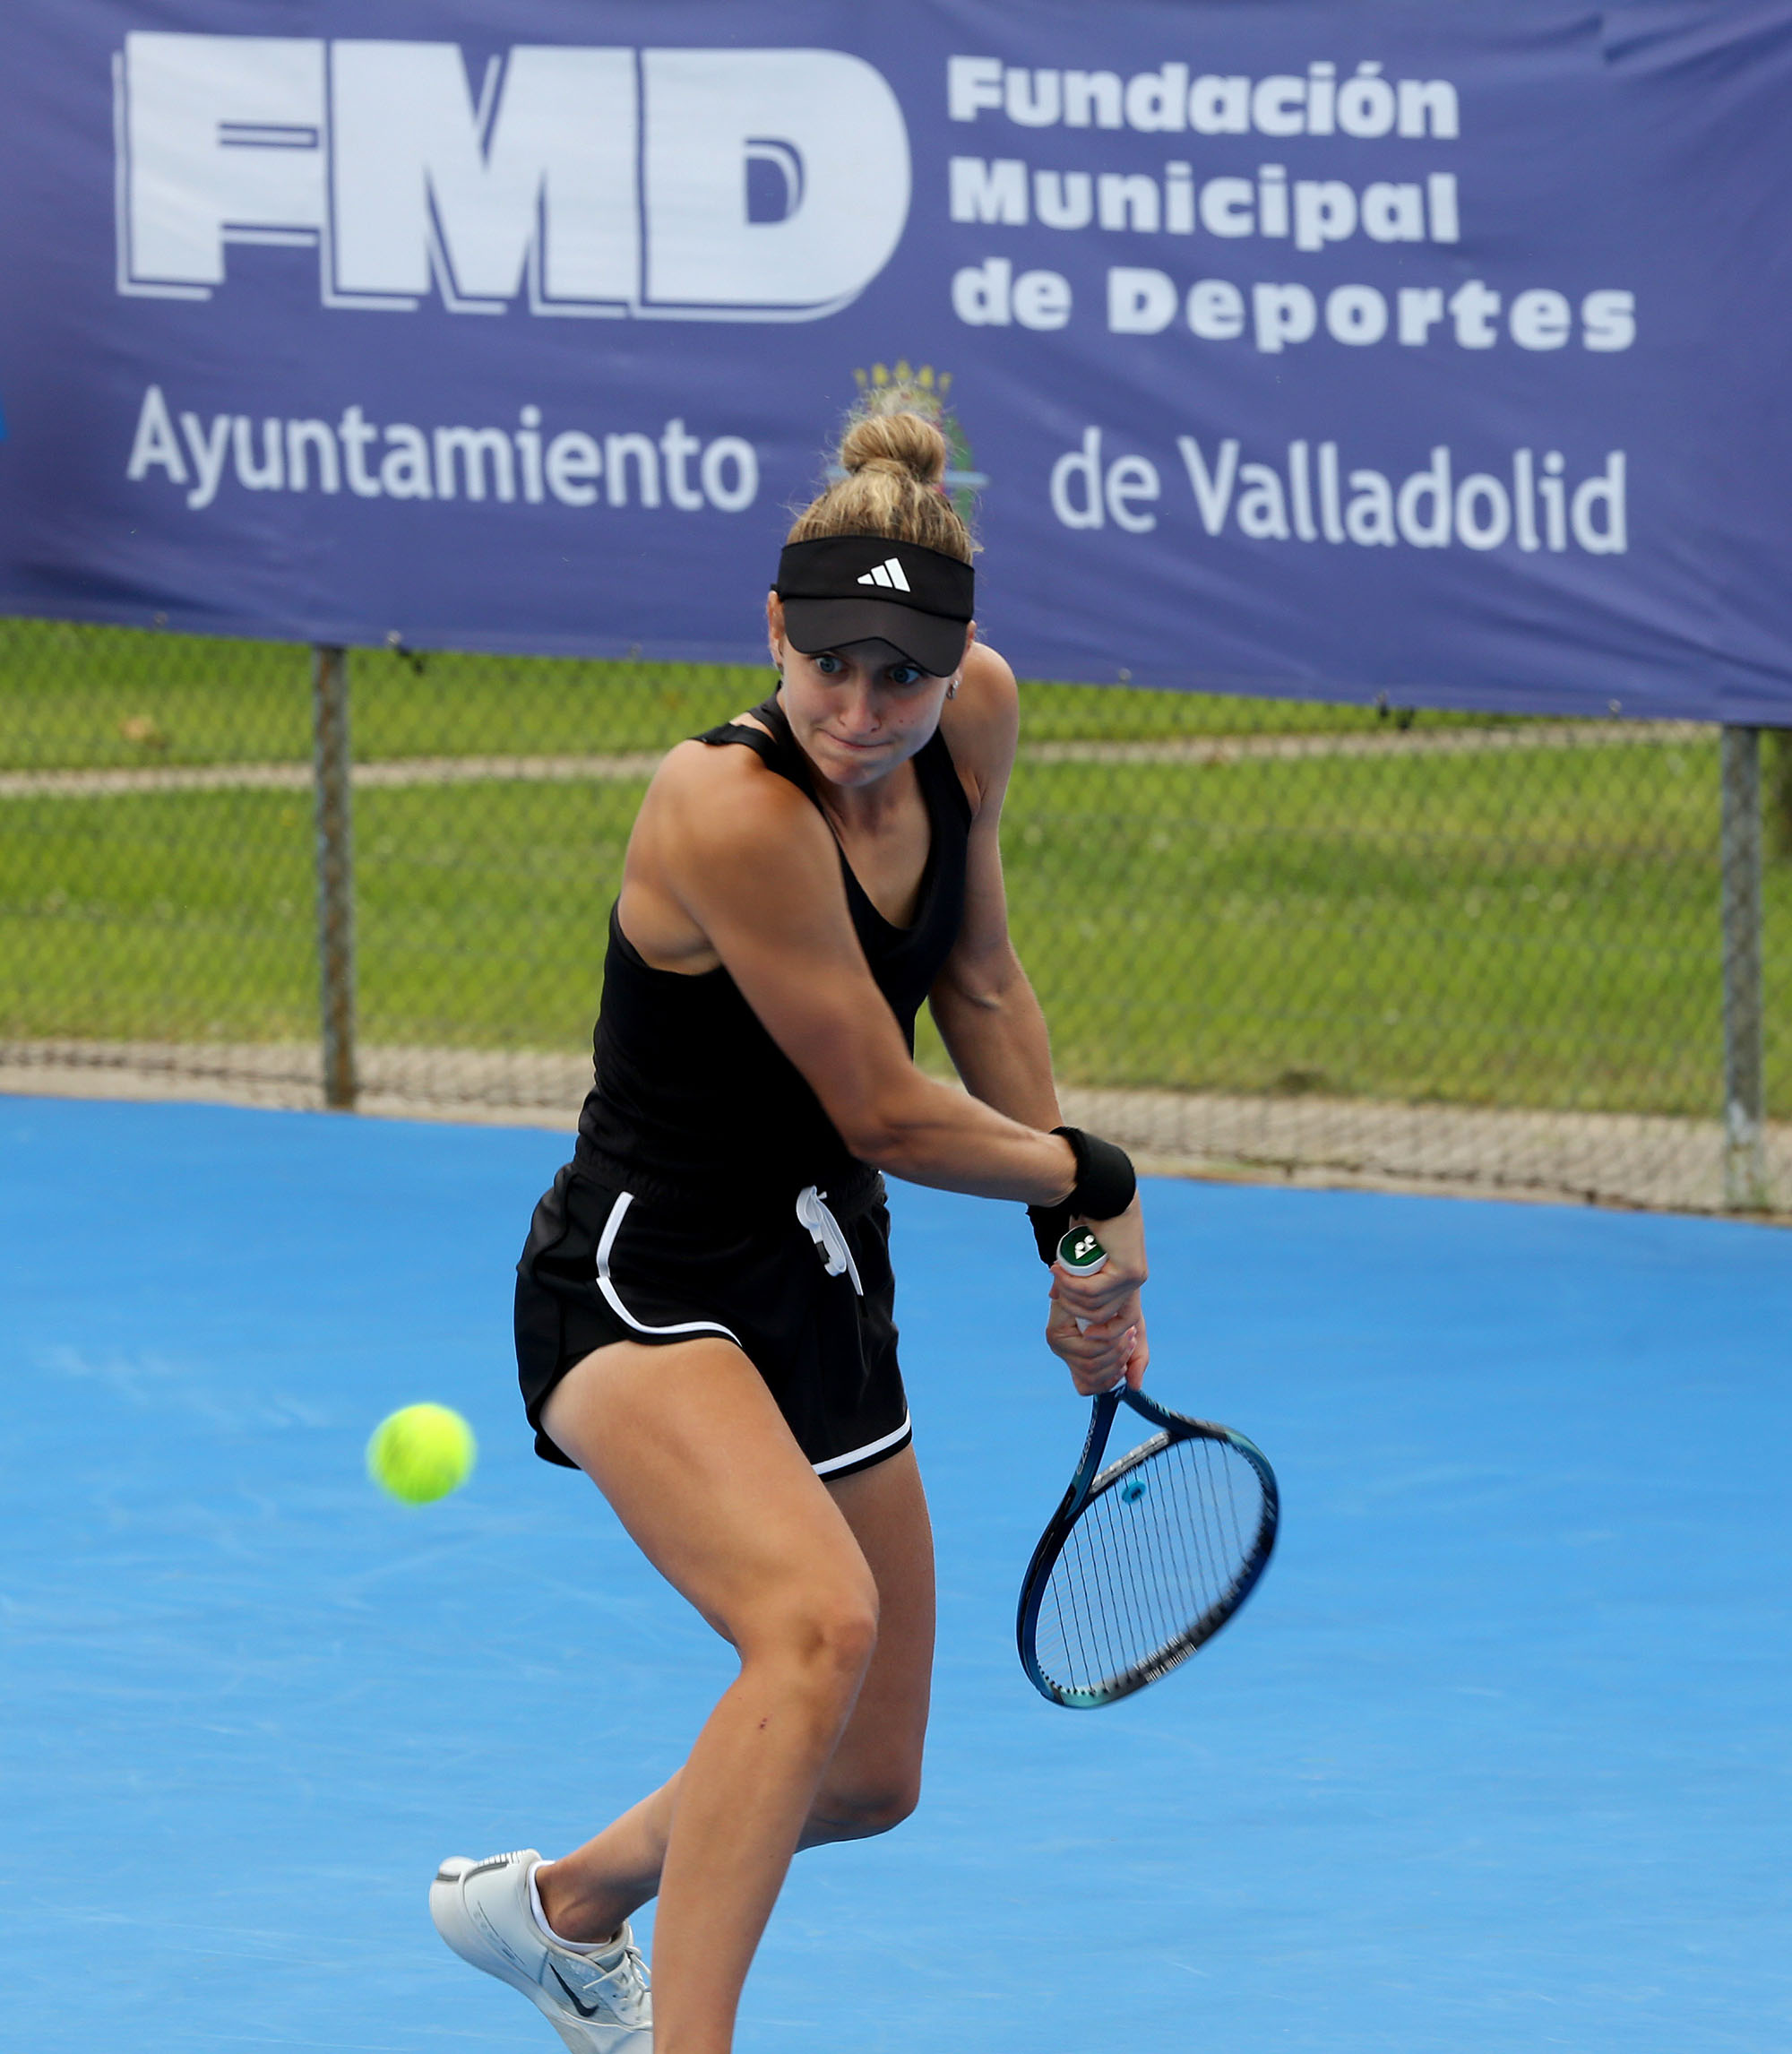 Foto de la instalación XX Torneo Internacional de Tenis Femenino ITF "Valladolid Open"